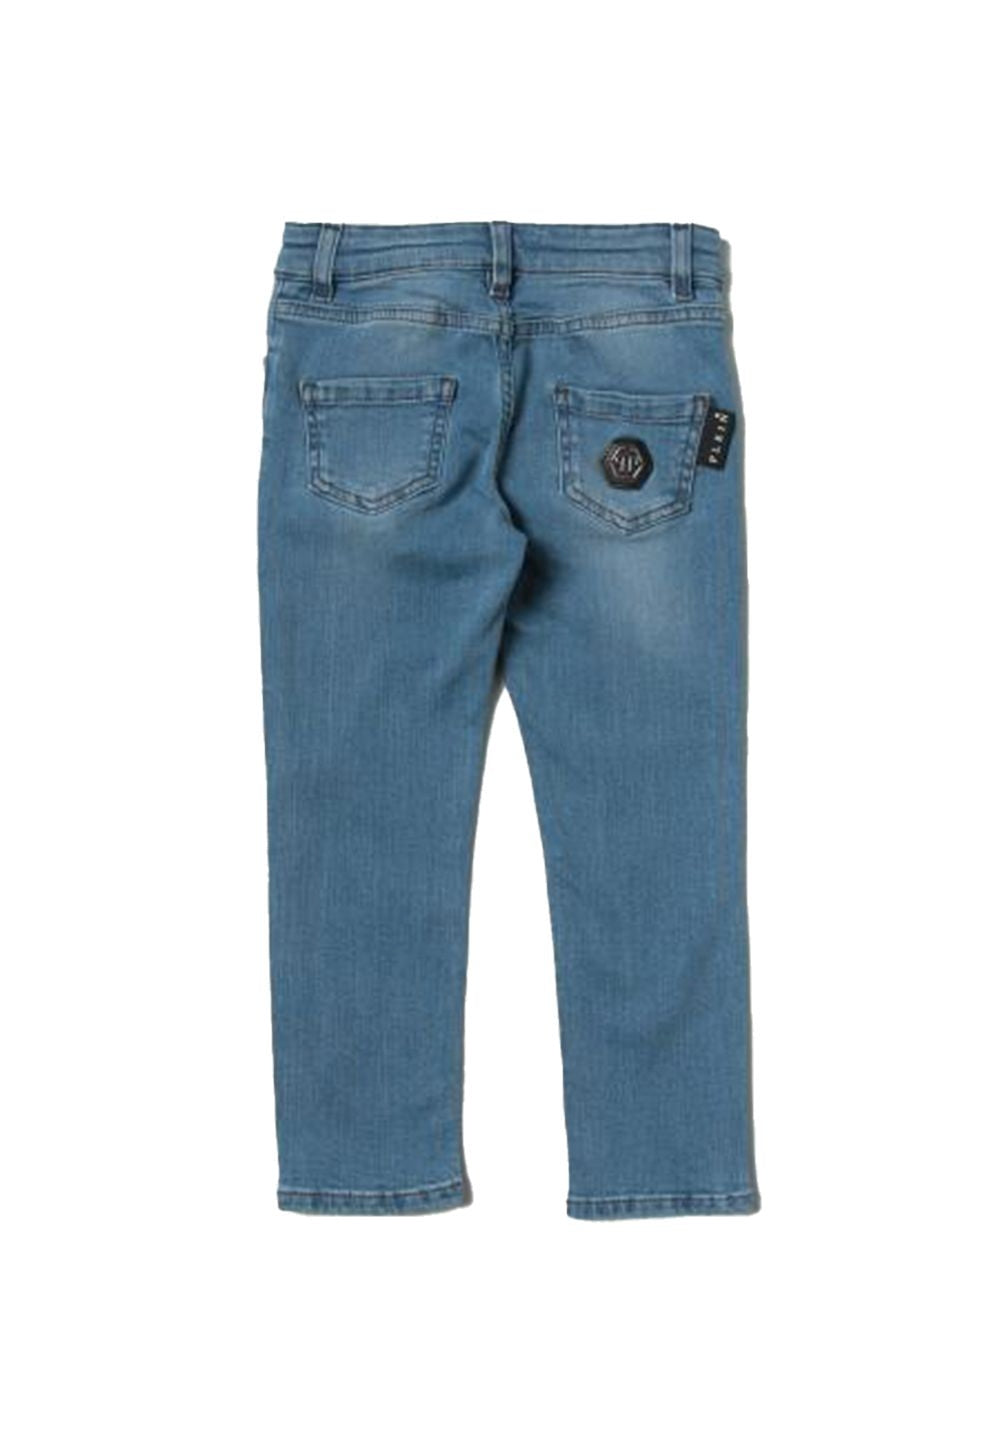 Jeans blu denim per bambino - Primamoda kids